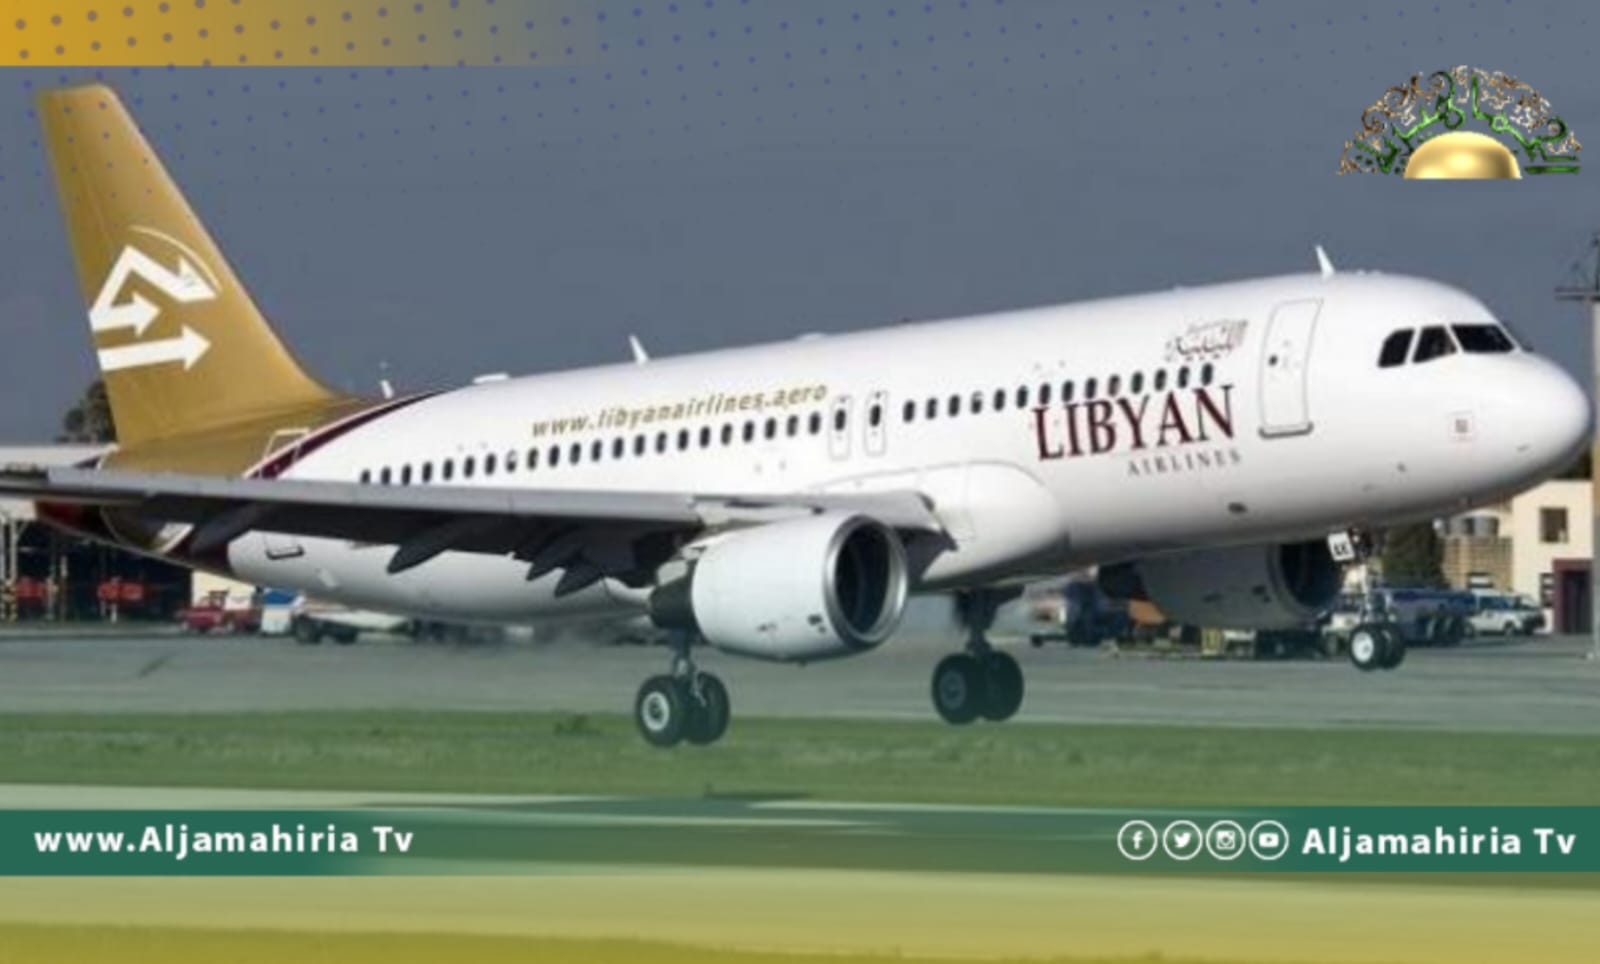 طائرة الخطوط الجوية الليبية تعود إلى مطار القاهرة بعد إقلاعها بسبب خلل فني